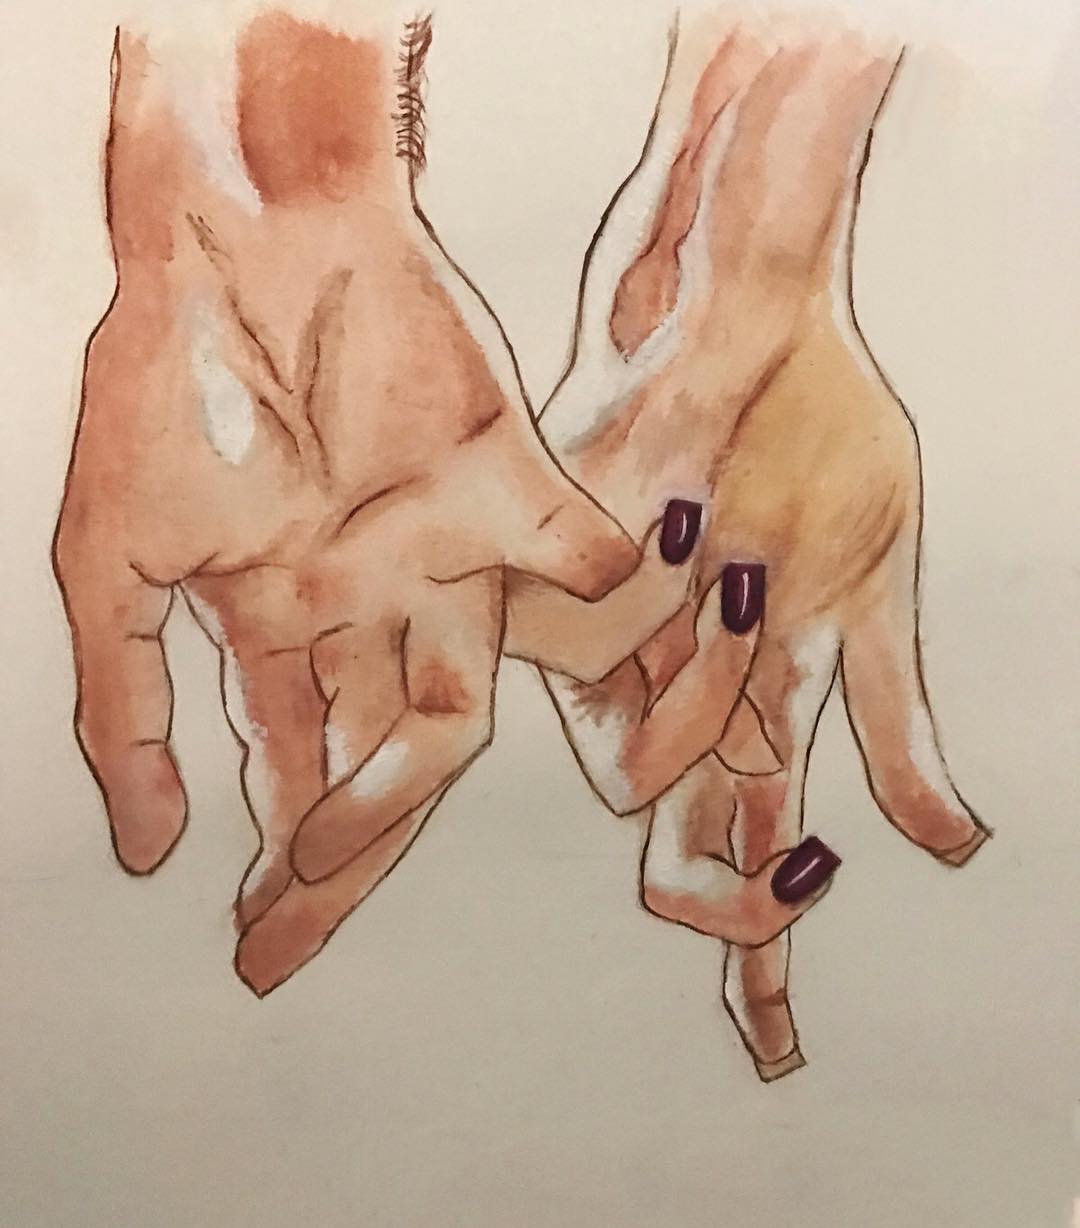 वॉटर कलर्सने साकारलेले हातांचे चित्र.